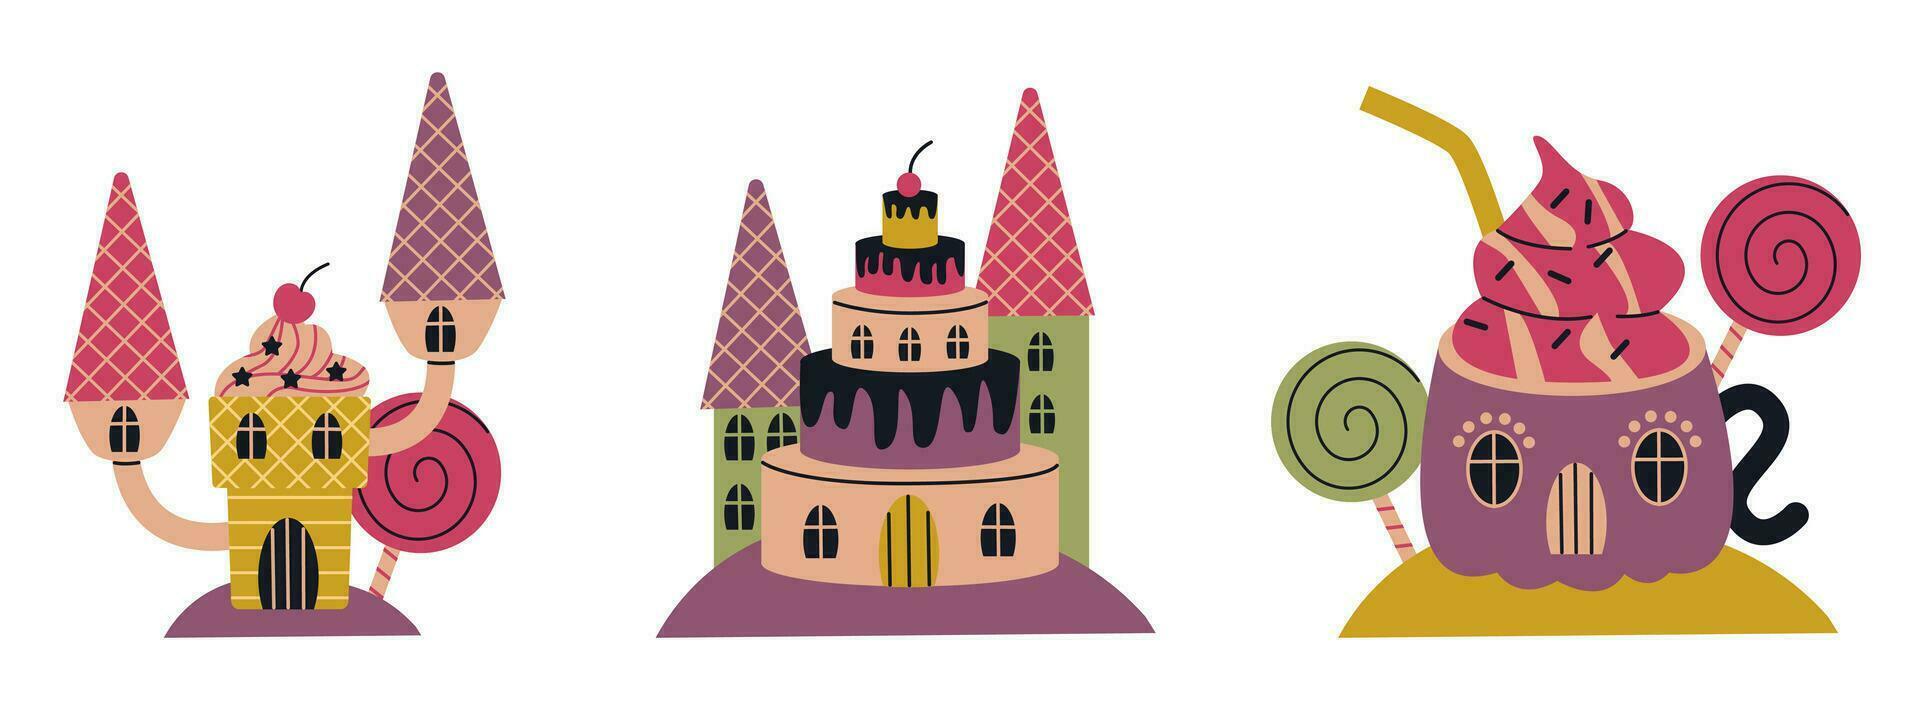 Cartoon fantasy sweet land caramel houses. Fantasy nature, game design sweet candy landscape illustration set. Flat vector illustration.